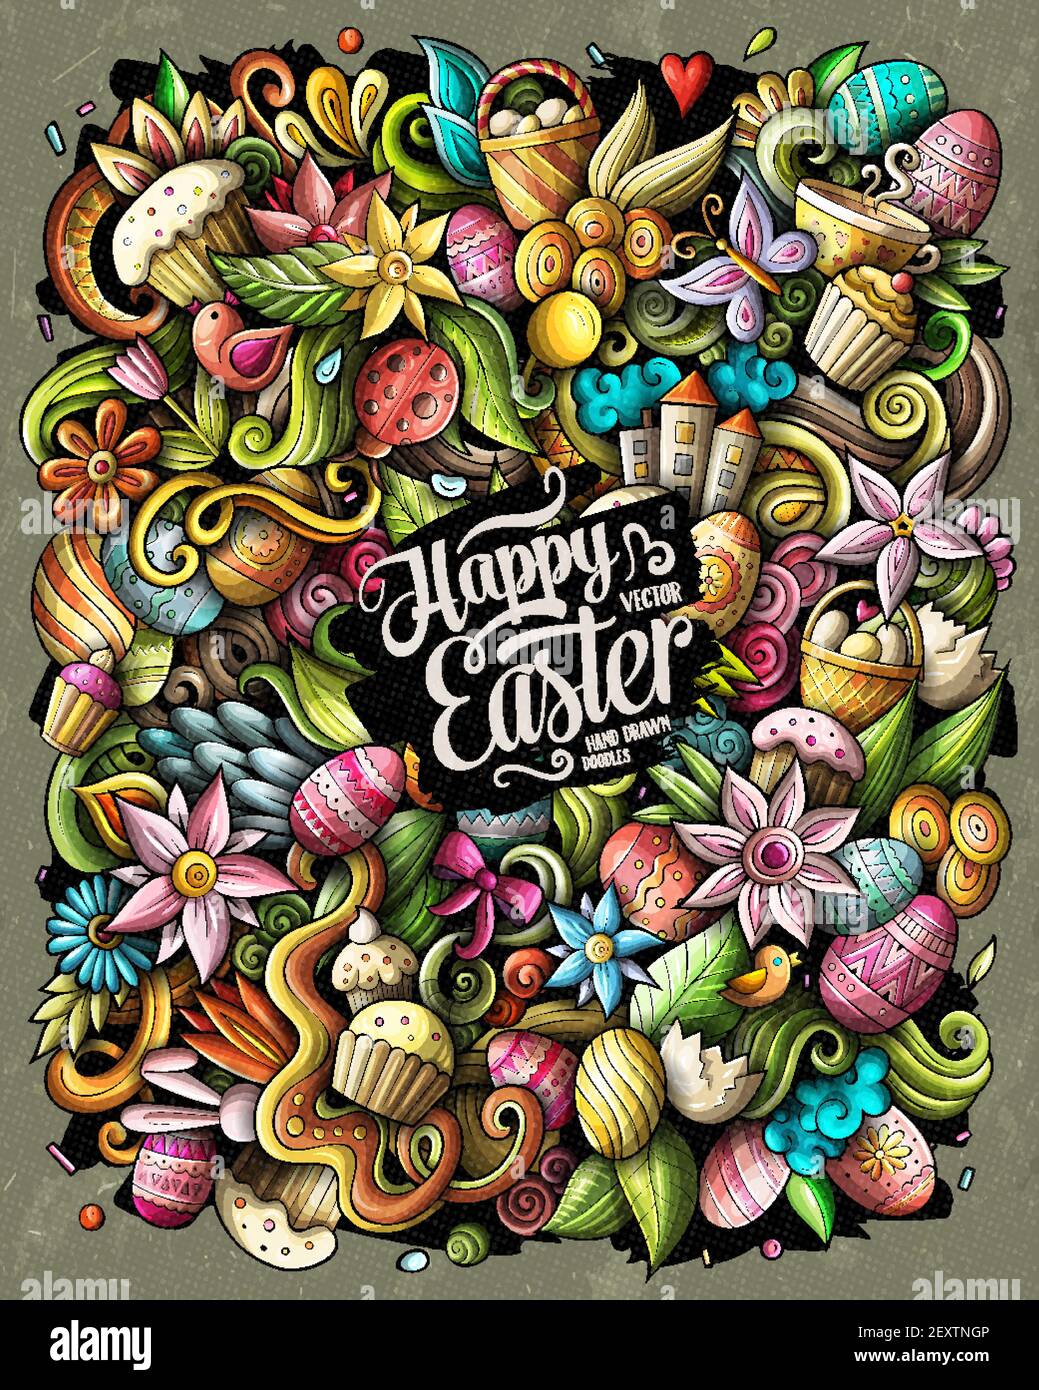 Happy Easter Vektor Doodles Illustration. Urlaub Elemente und Objekte Cartoon Hintergrund. Farbe lustige Bild. Alle Elemente sind getrennt Stock Vektor